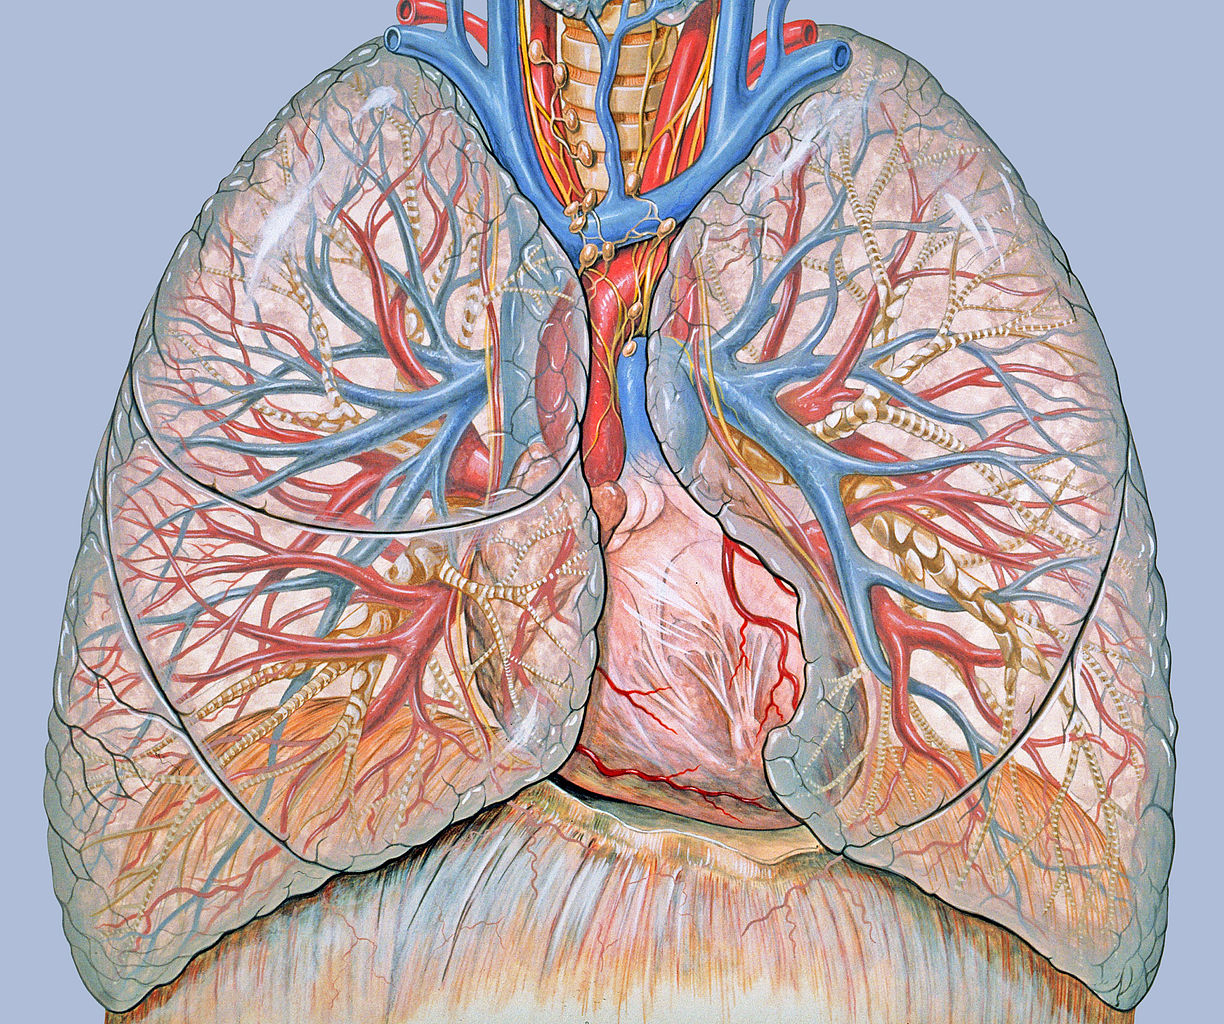 Áttétes tüdőrák - ennyi az esély a túlélésre